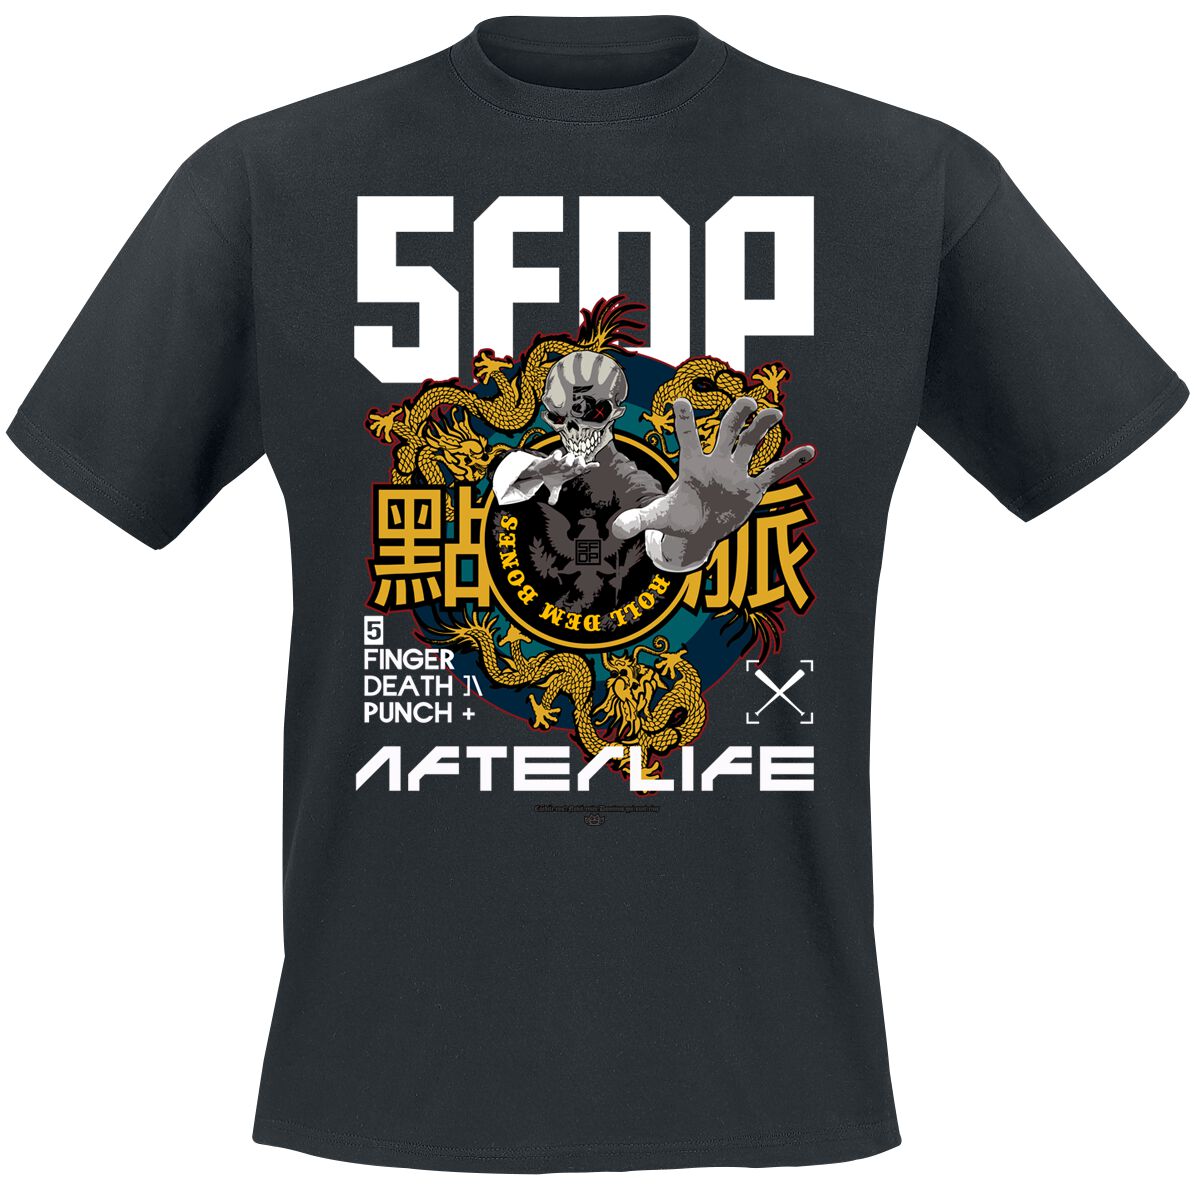 Five Finger Death Punch T-Shirt - Retro Dim Mak - S bis M - für Männer - Größe S - schwarz  - Lizenziertes Merchandise!